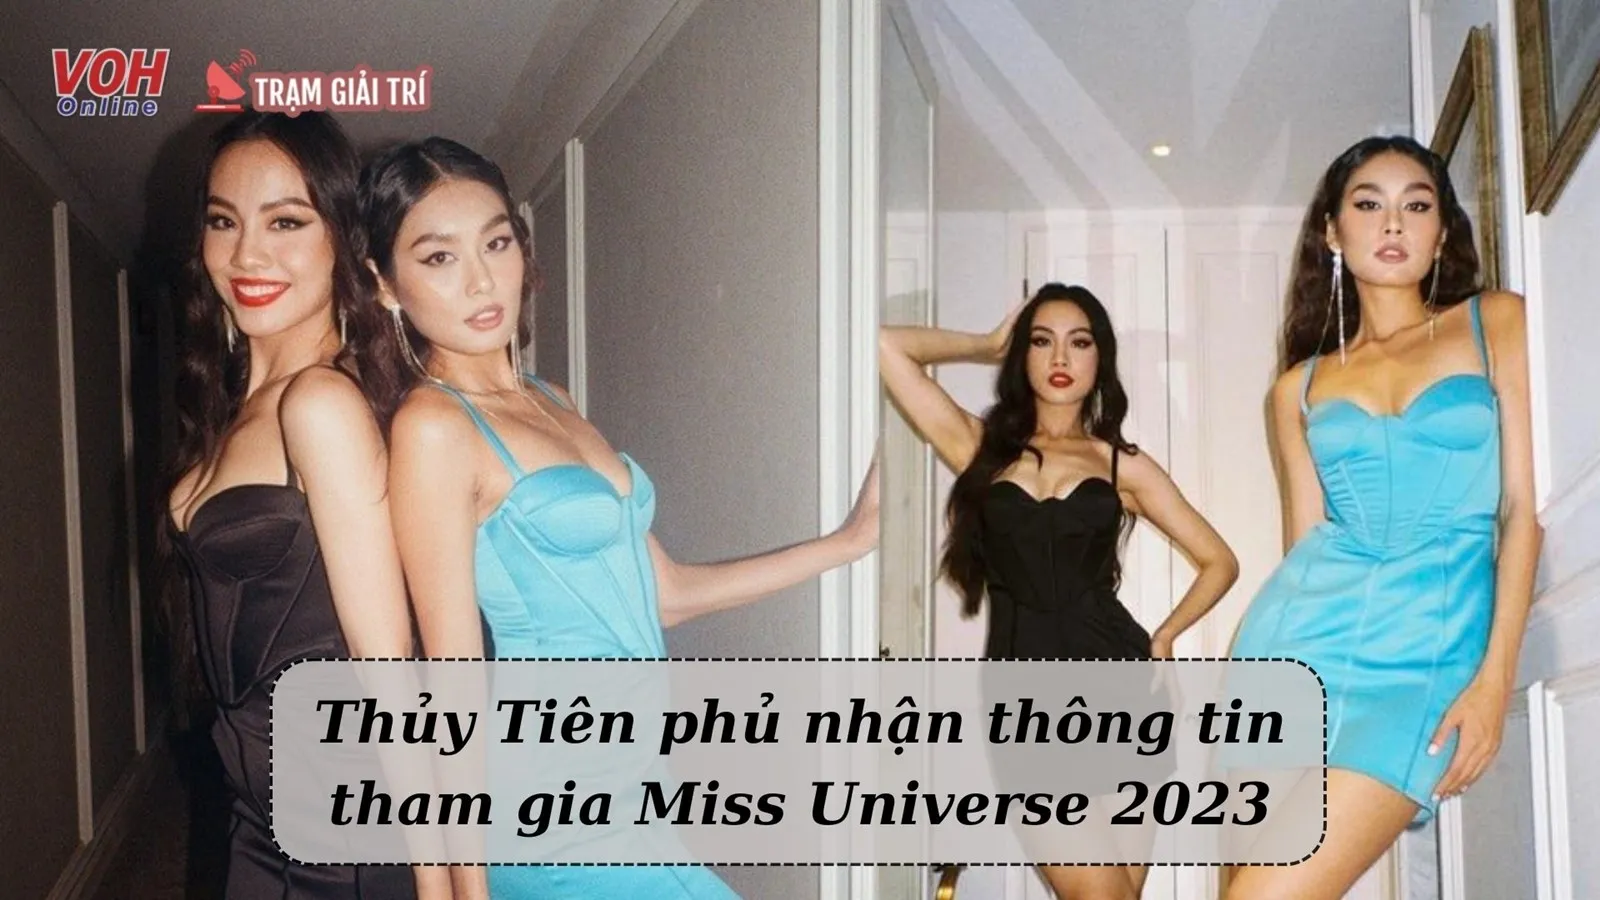 Thủy Tiên phản hồi tin giành suất thi Miss Universe của Thảo Nhi Lê